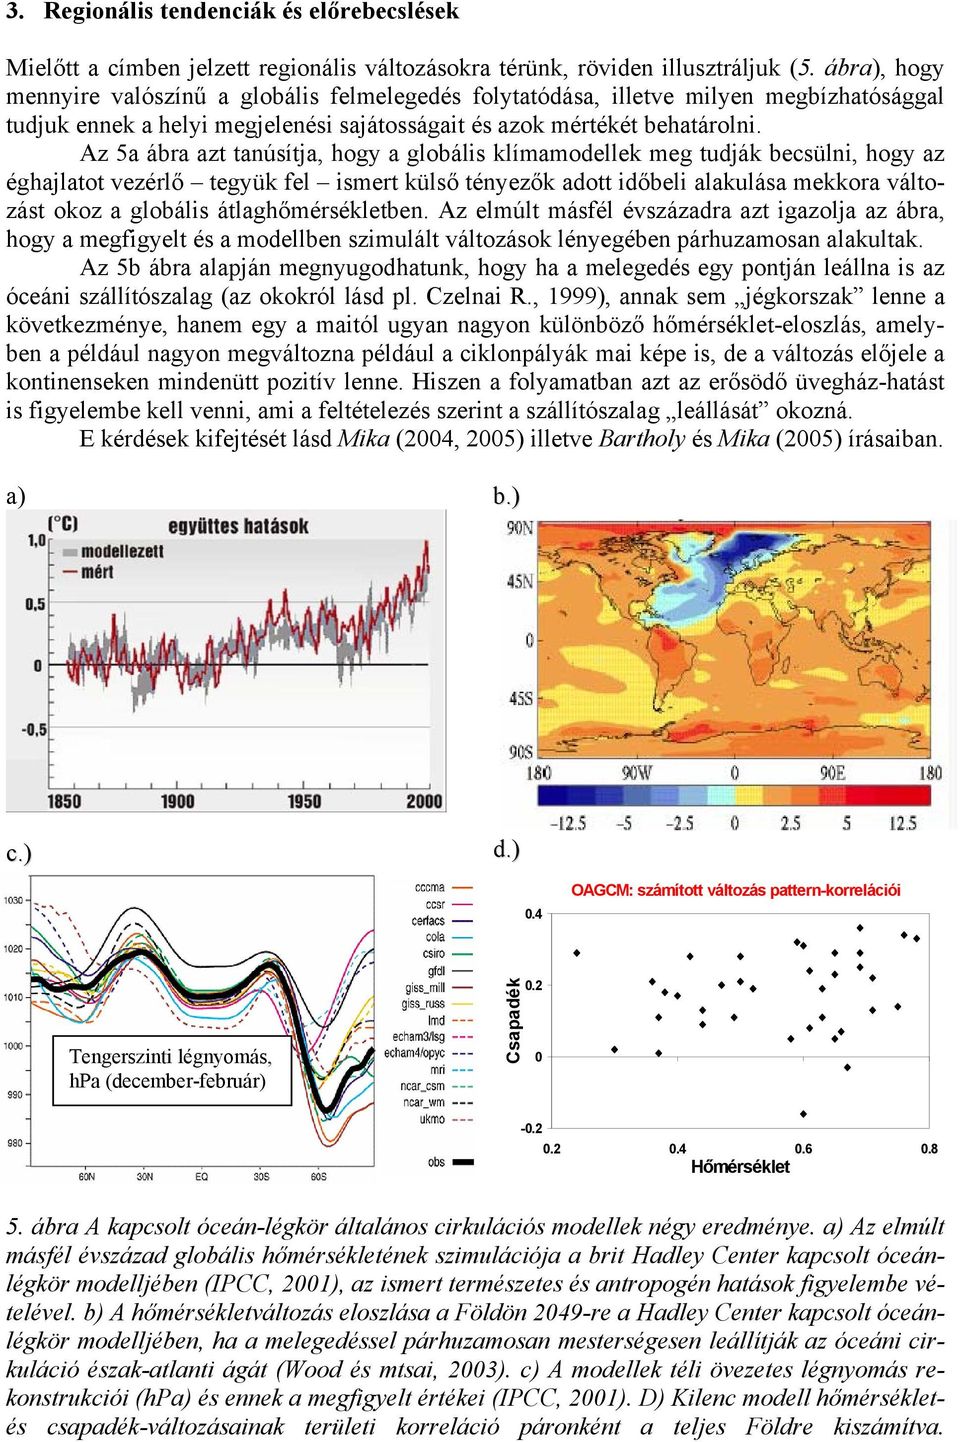 Az 5a ábra azt tanúsítja, hogy a globális klímamodellek meg tudják becsülni, hogy az éghajlatot vezérlő tegyük fel ismert külső tényezők adott időbeli alakulása mekkora változást okoz a globális